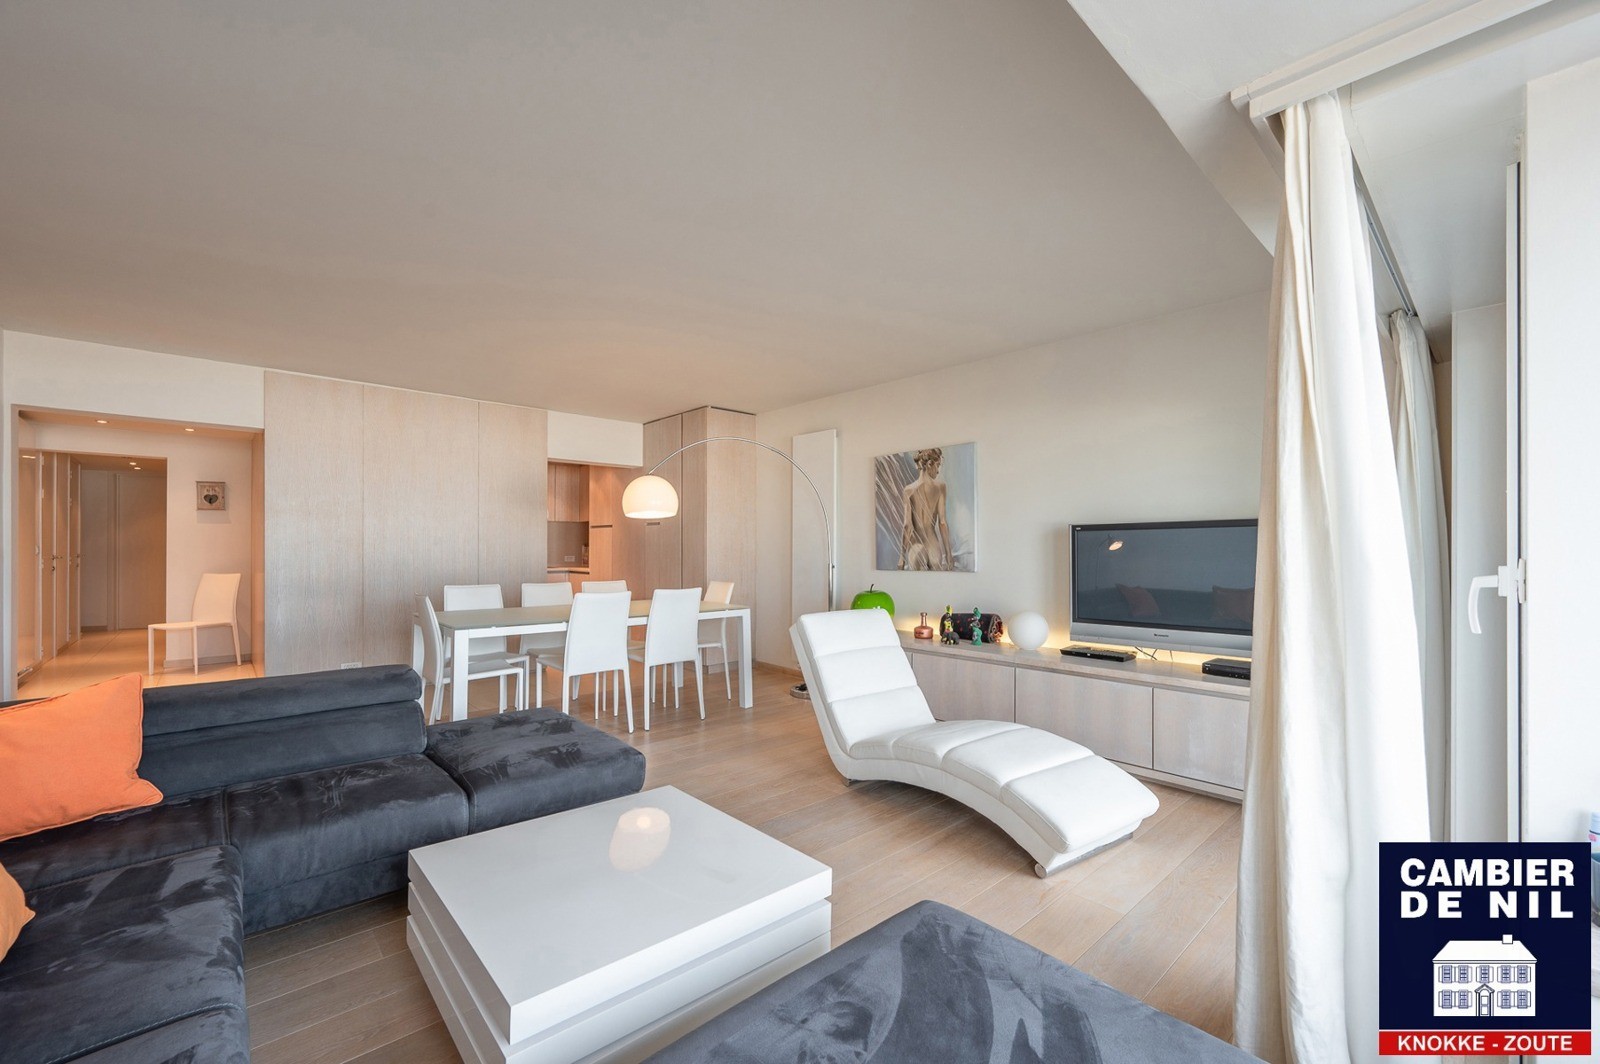 MEUBLÉ : Appartement spacieux avec vue mer et 4 chambres à coucher à Duinbergen ! 3